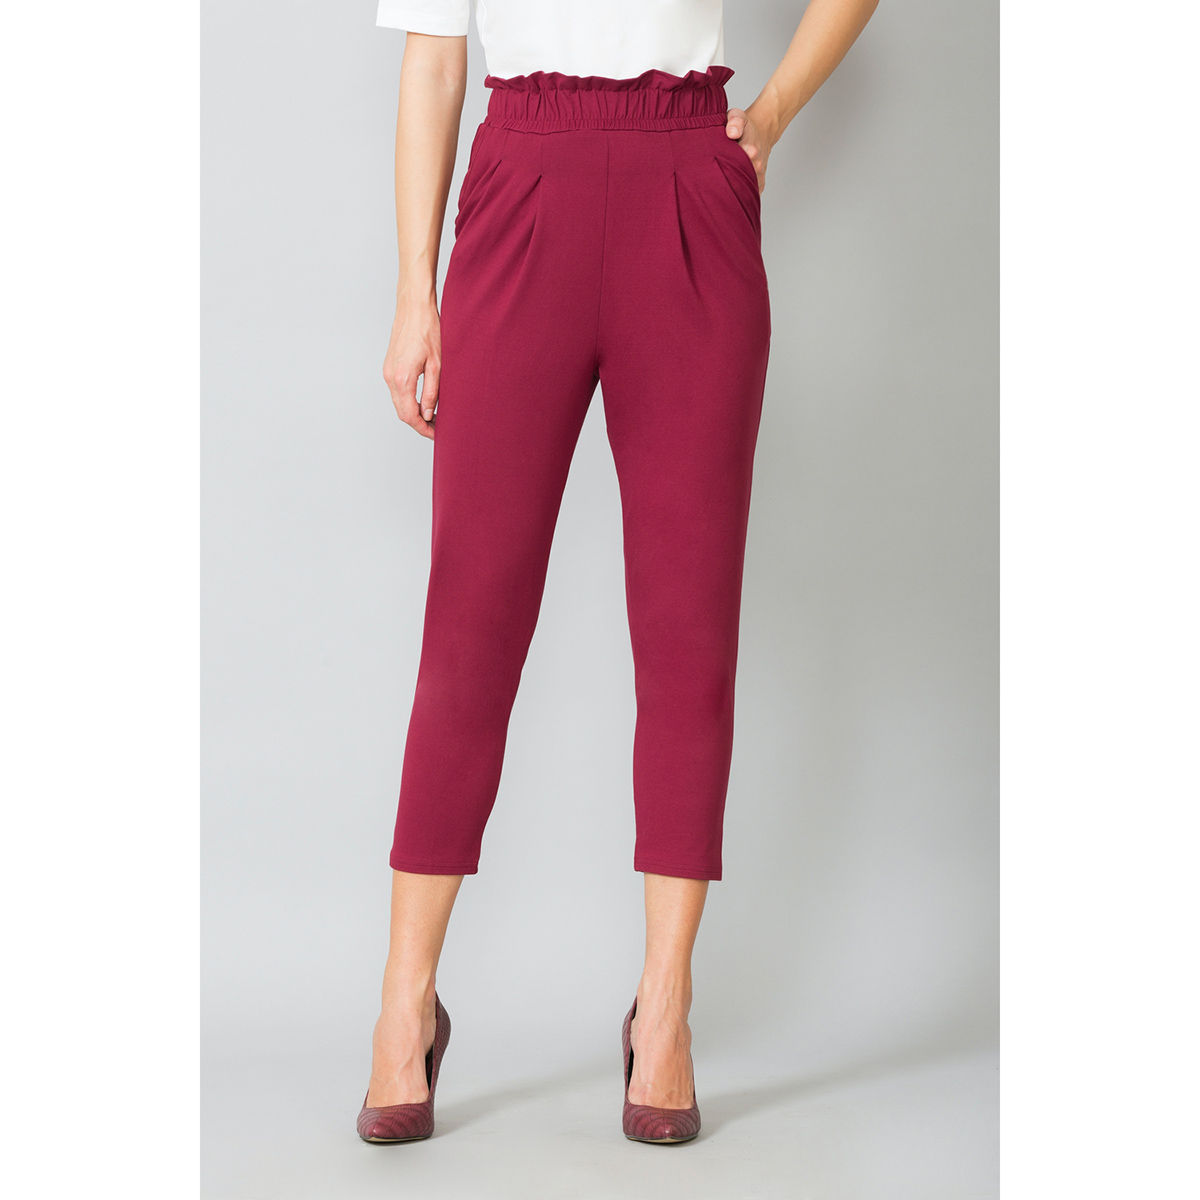 Buy Pink Trousers  Pants for Women by Bitterlime Online  Ajiocom